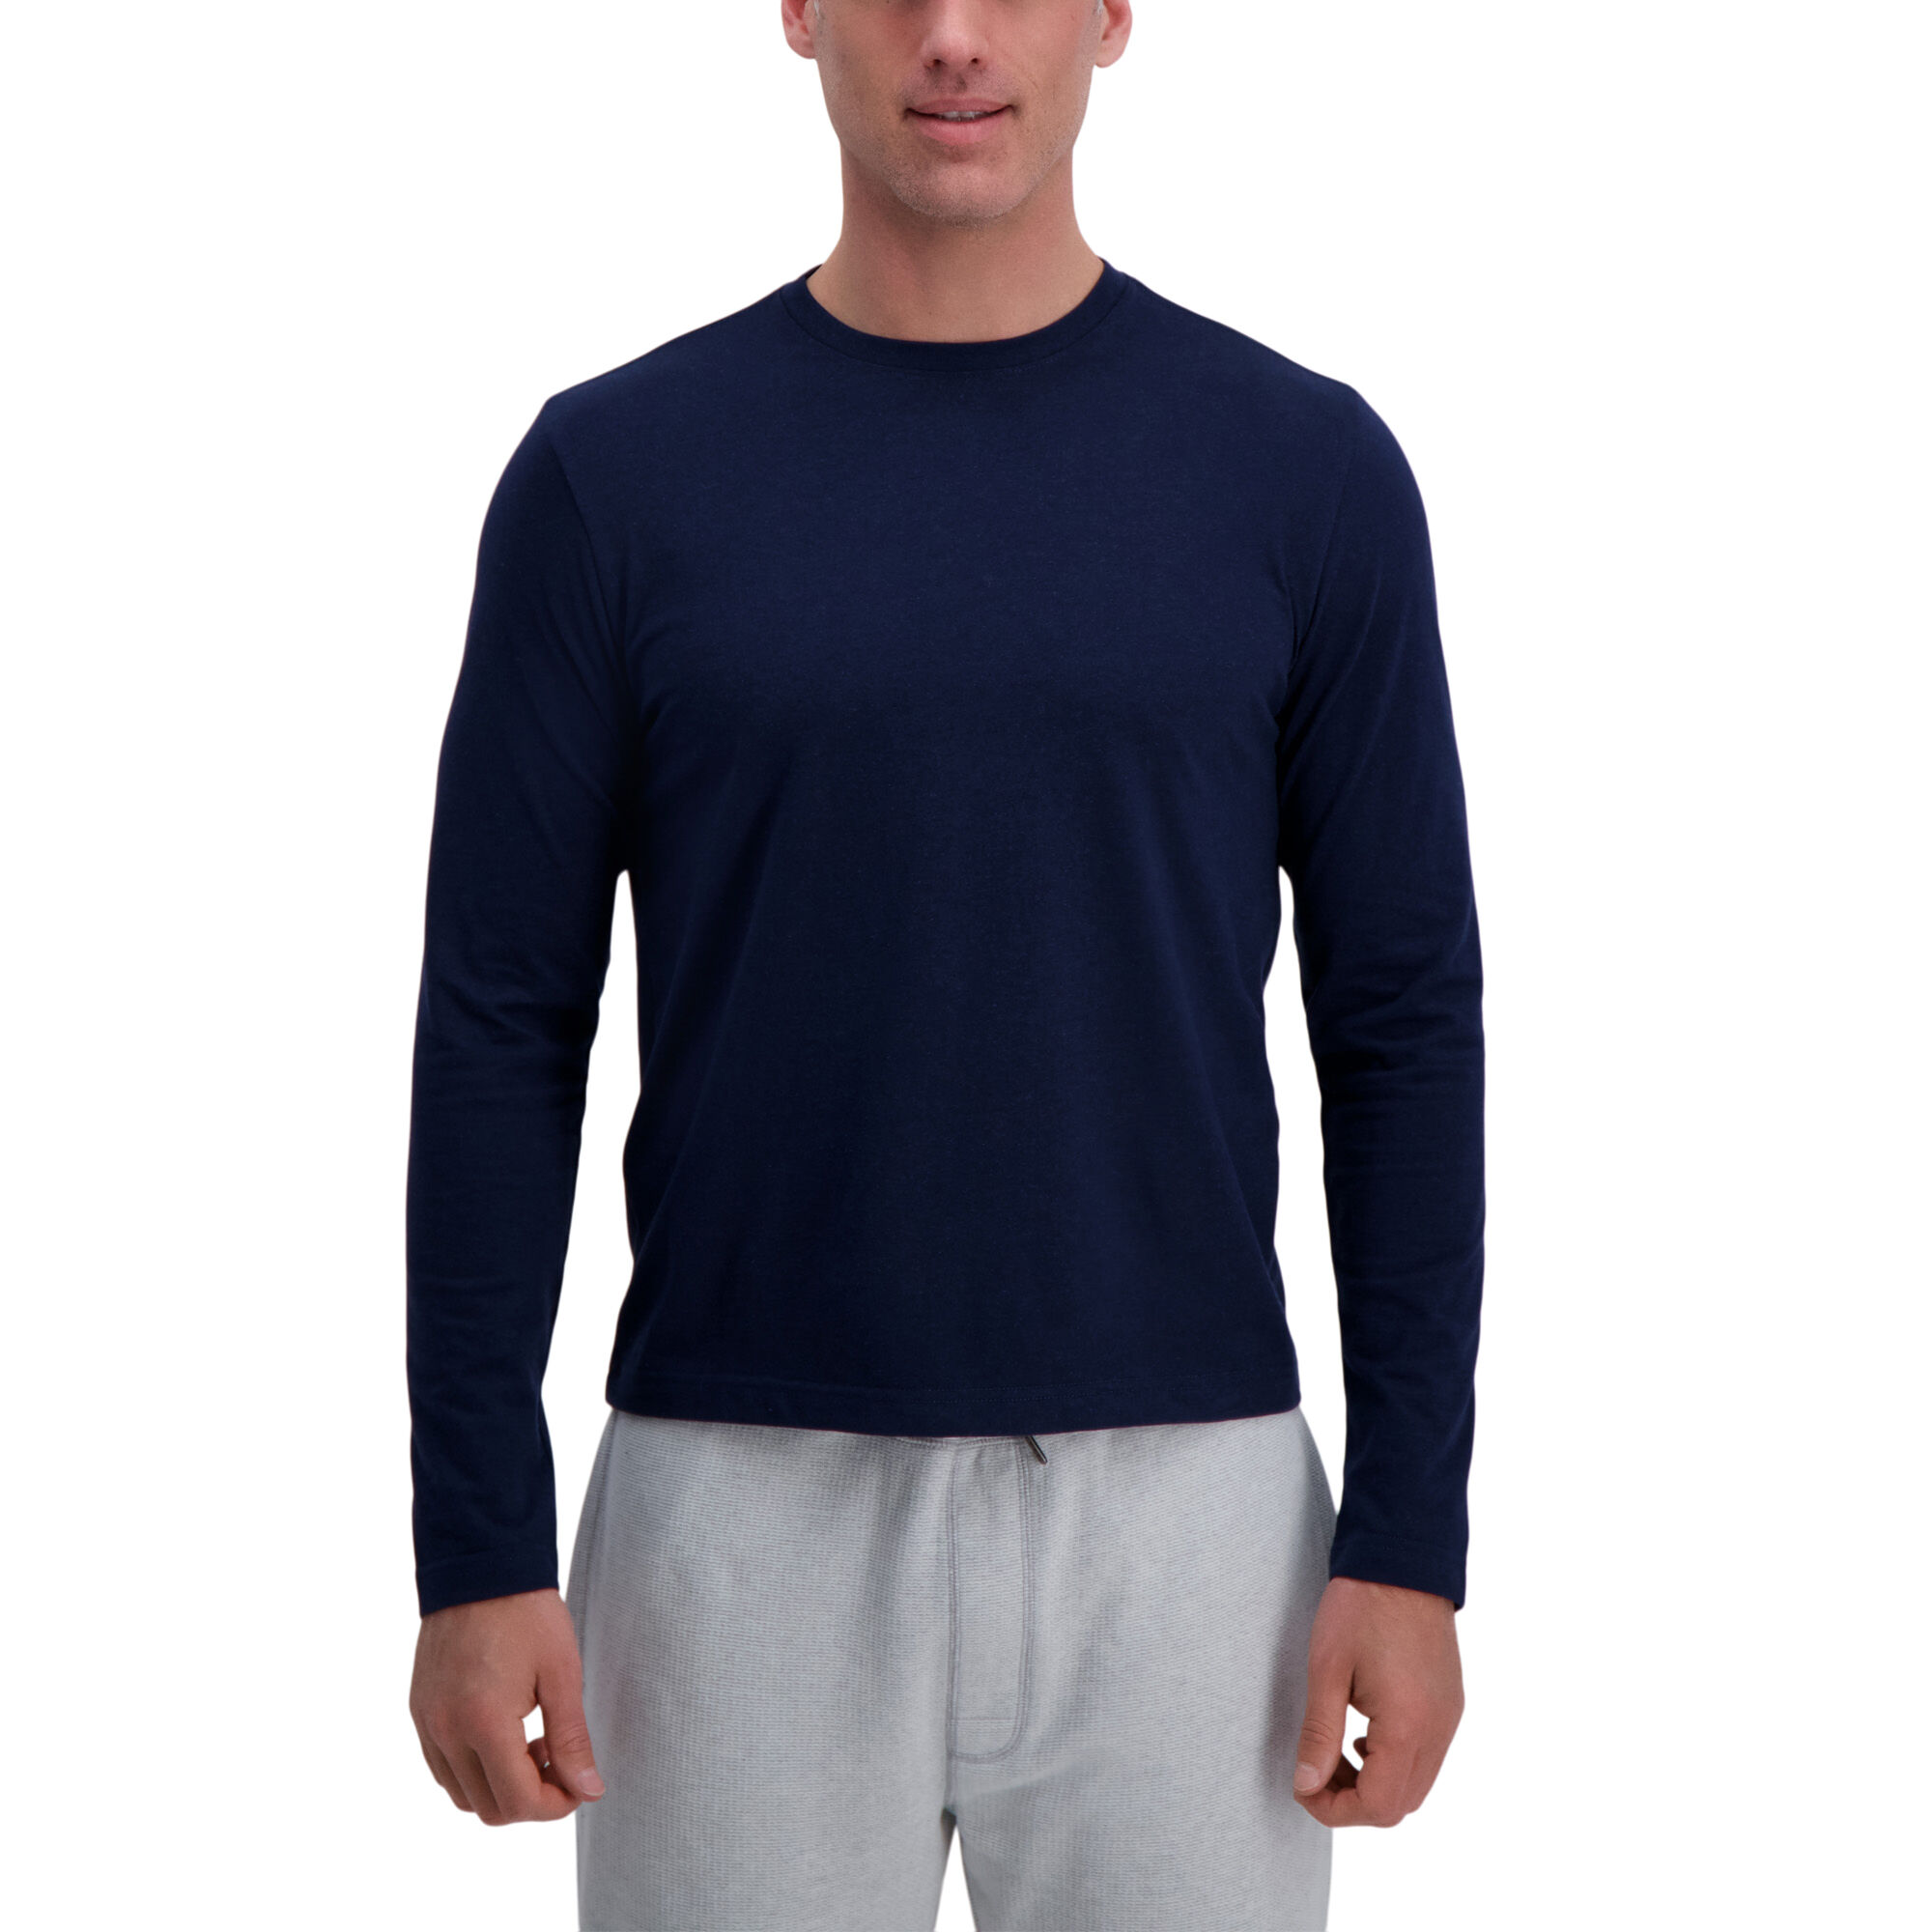 Haggar Jaspe Long Sleeve Crewneck Tee Dark Navy (UE70008 Clothing Shirts & Tops) photo